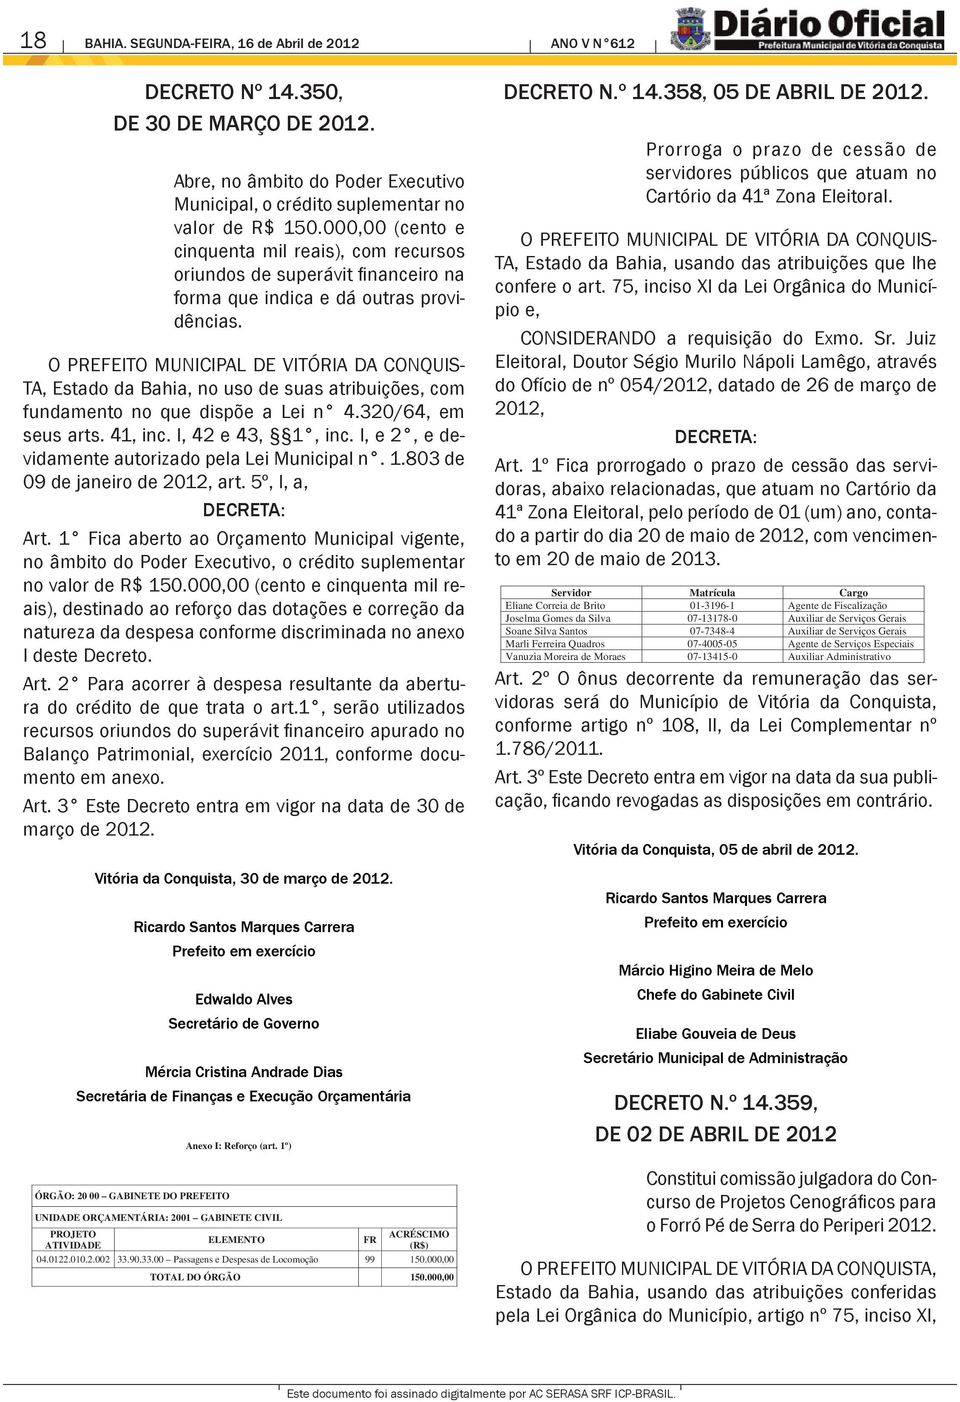 O PREFEITO MUNICIPAL DE VITÓRIA DA CONQUIS- TA, Estado da Bahia, no uso de suas atribuições, com fundamento no que dispõe a Lei n 4.320/64, em seus arts. 41, inc. I, 42 e 43, 1, inc.